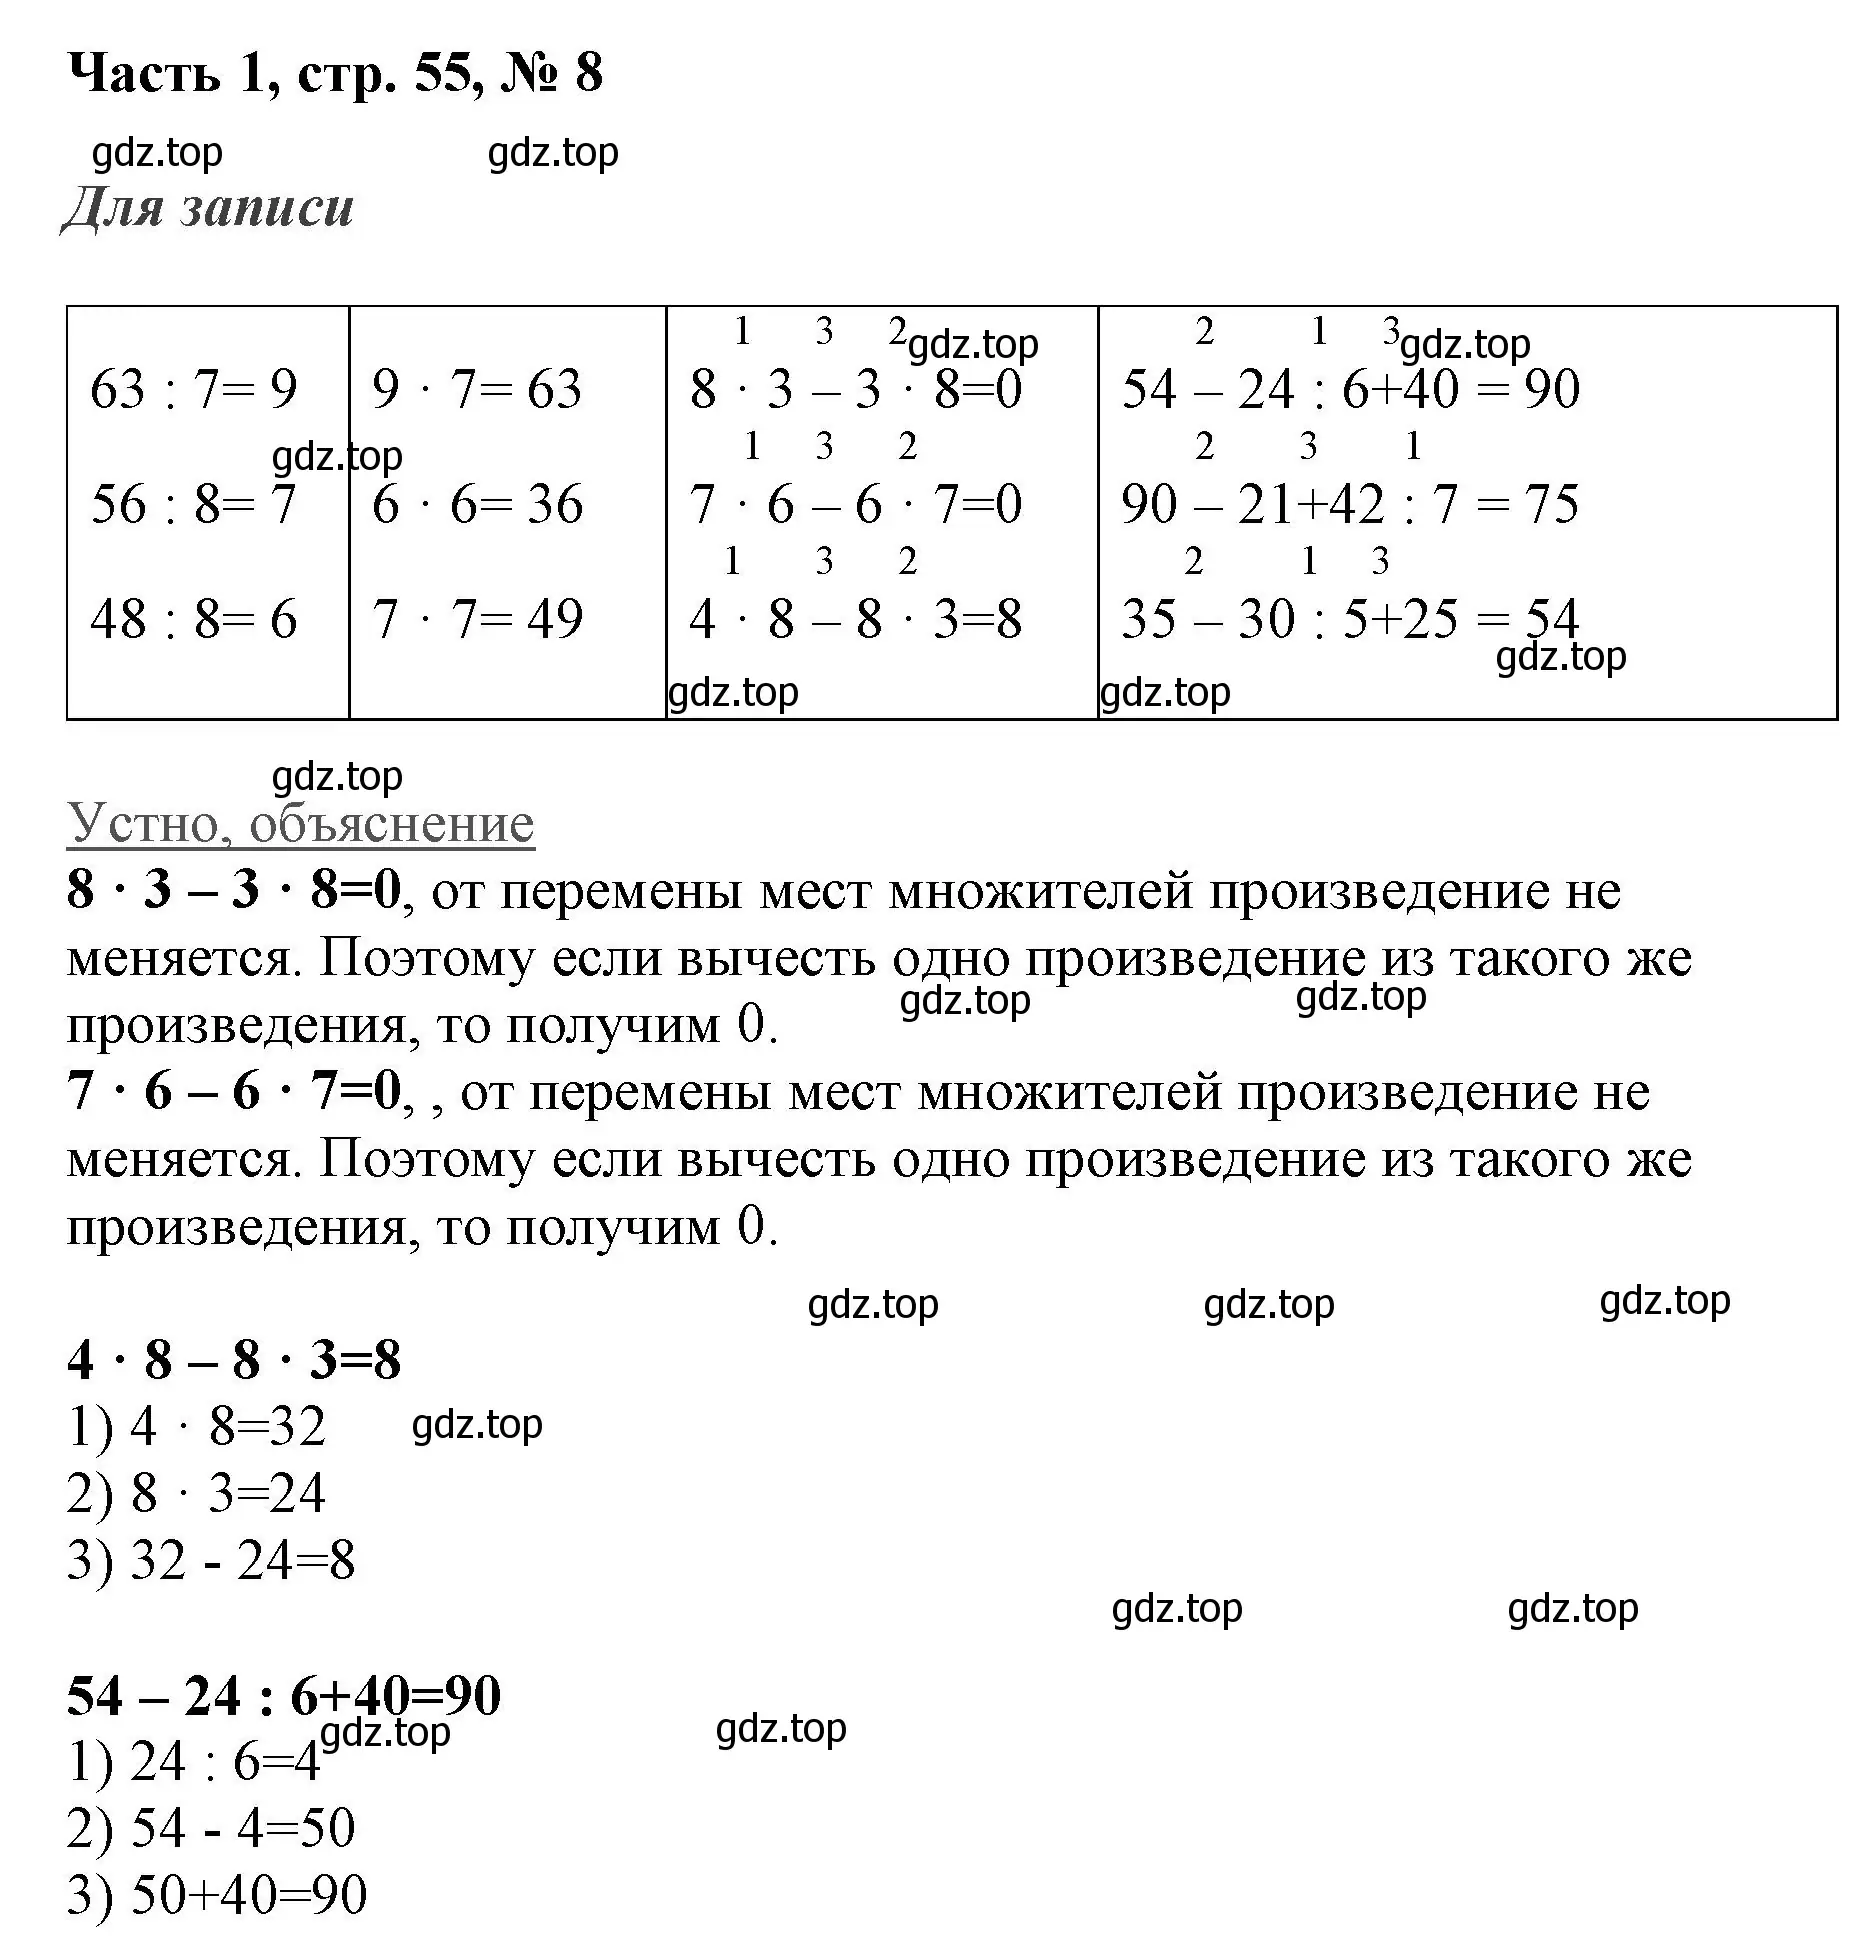 Решение номер 8 (страница 55) гдз по математике 3 класс Моро, Бантова, учебник 1 часть